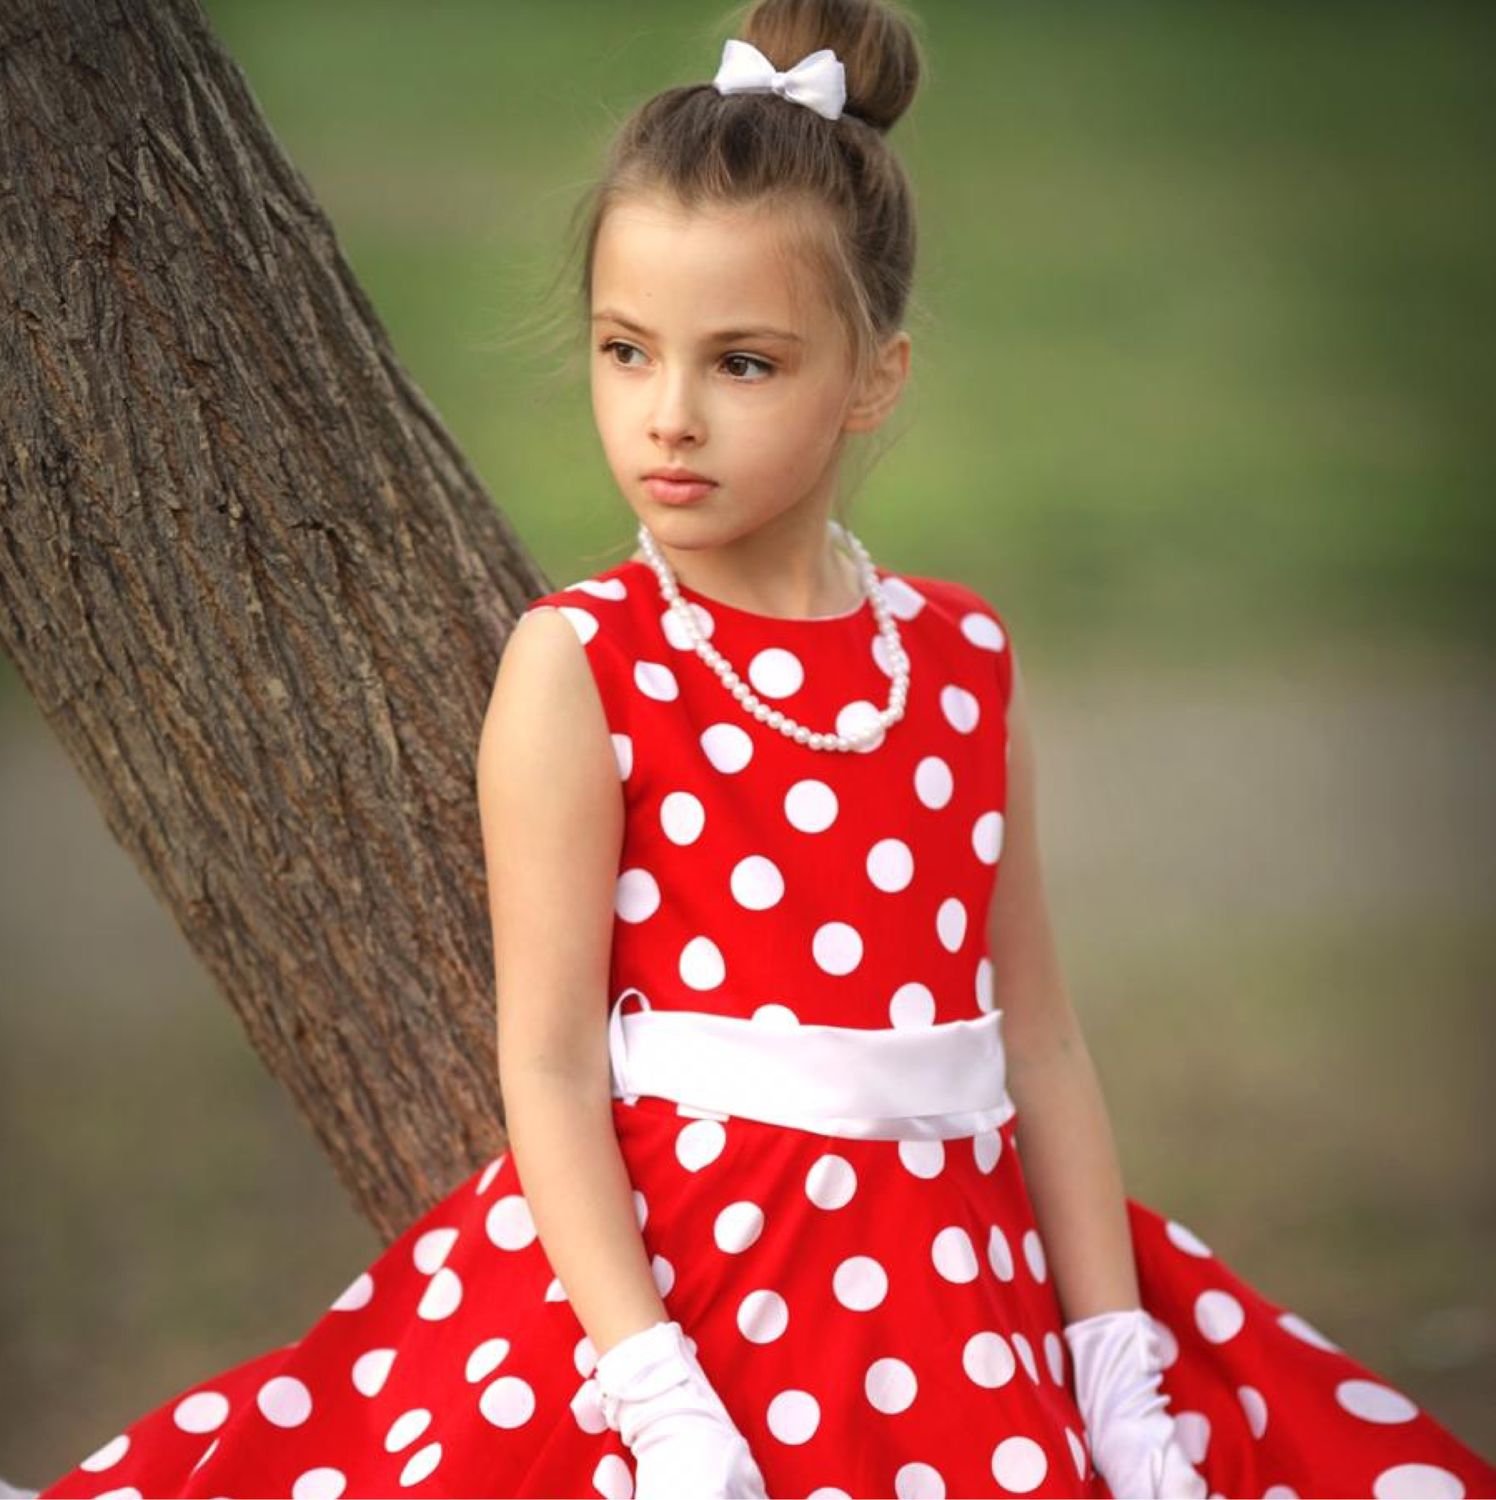 Детская прическа к красному платью